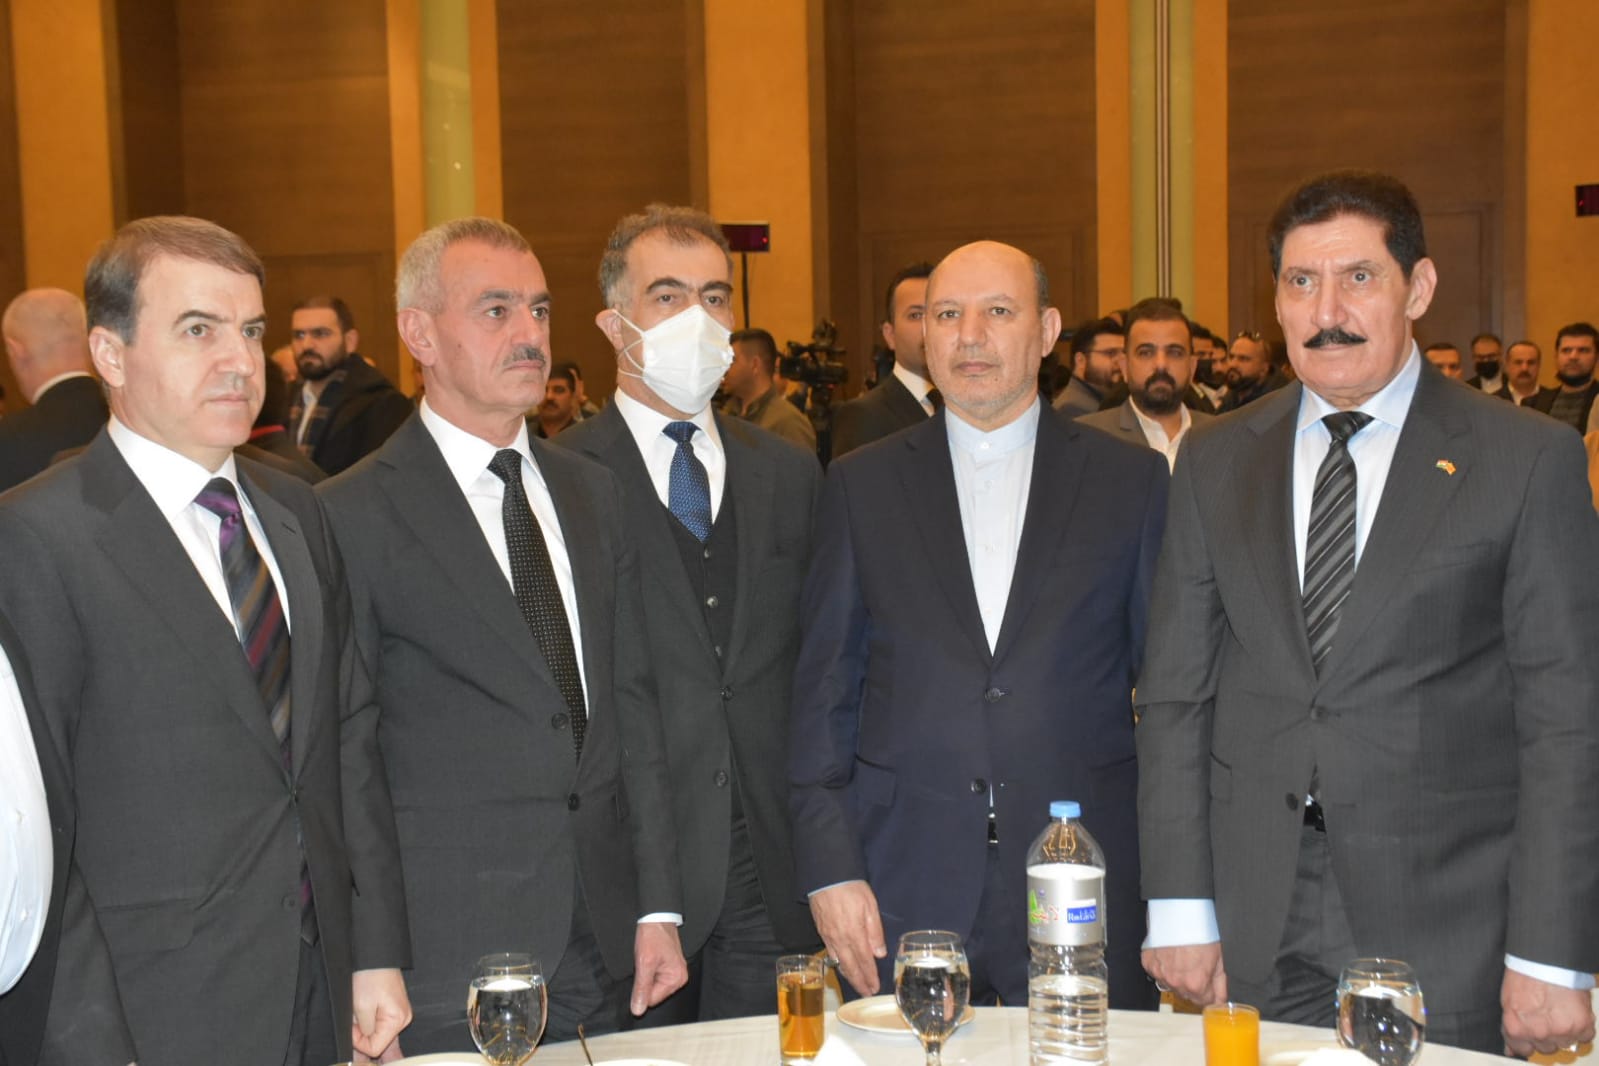 خلال احتفال في أربيل.. رئيس إقليم كوردستان يدعو إيران لتنمية العلاقات الثنائية